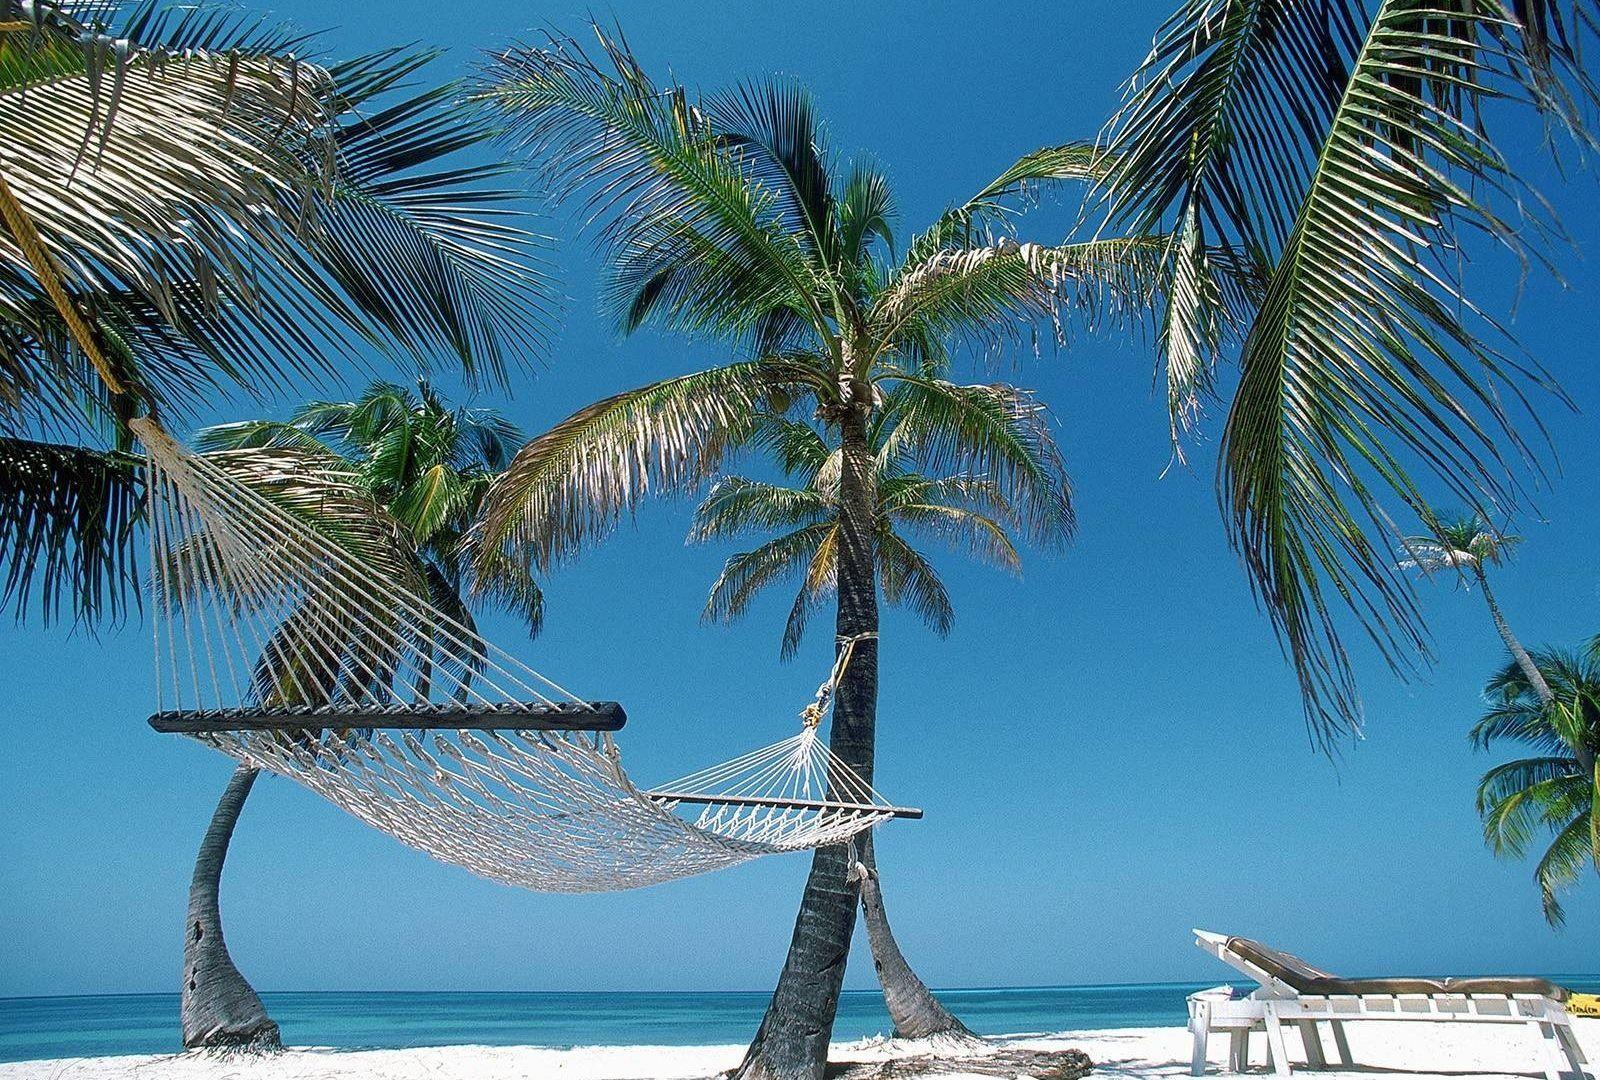 Haiti Tag wallpaper: Hiati Haiti Palm Beach Hammock Relaxing Tree